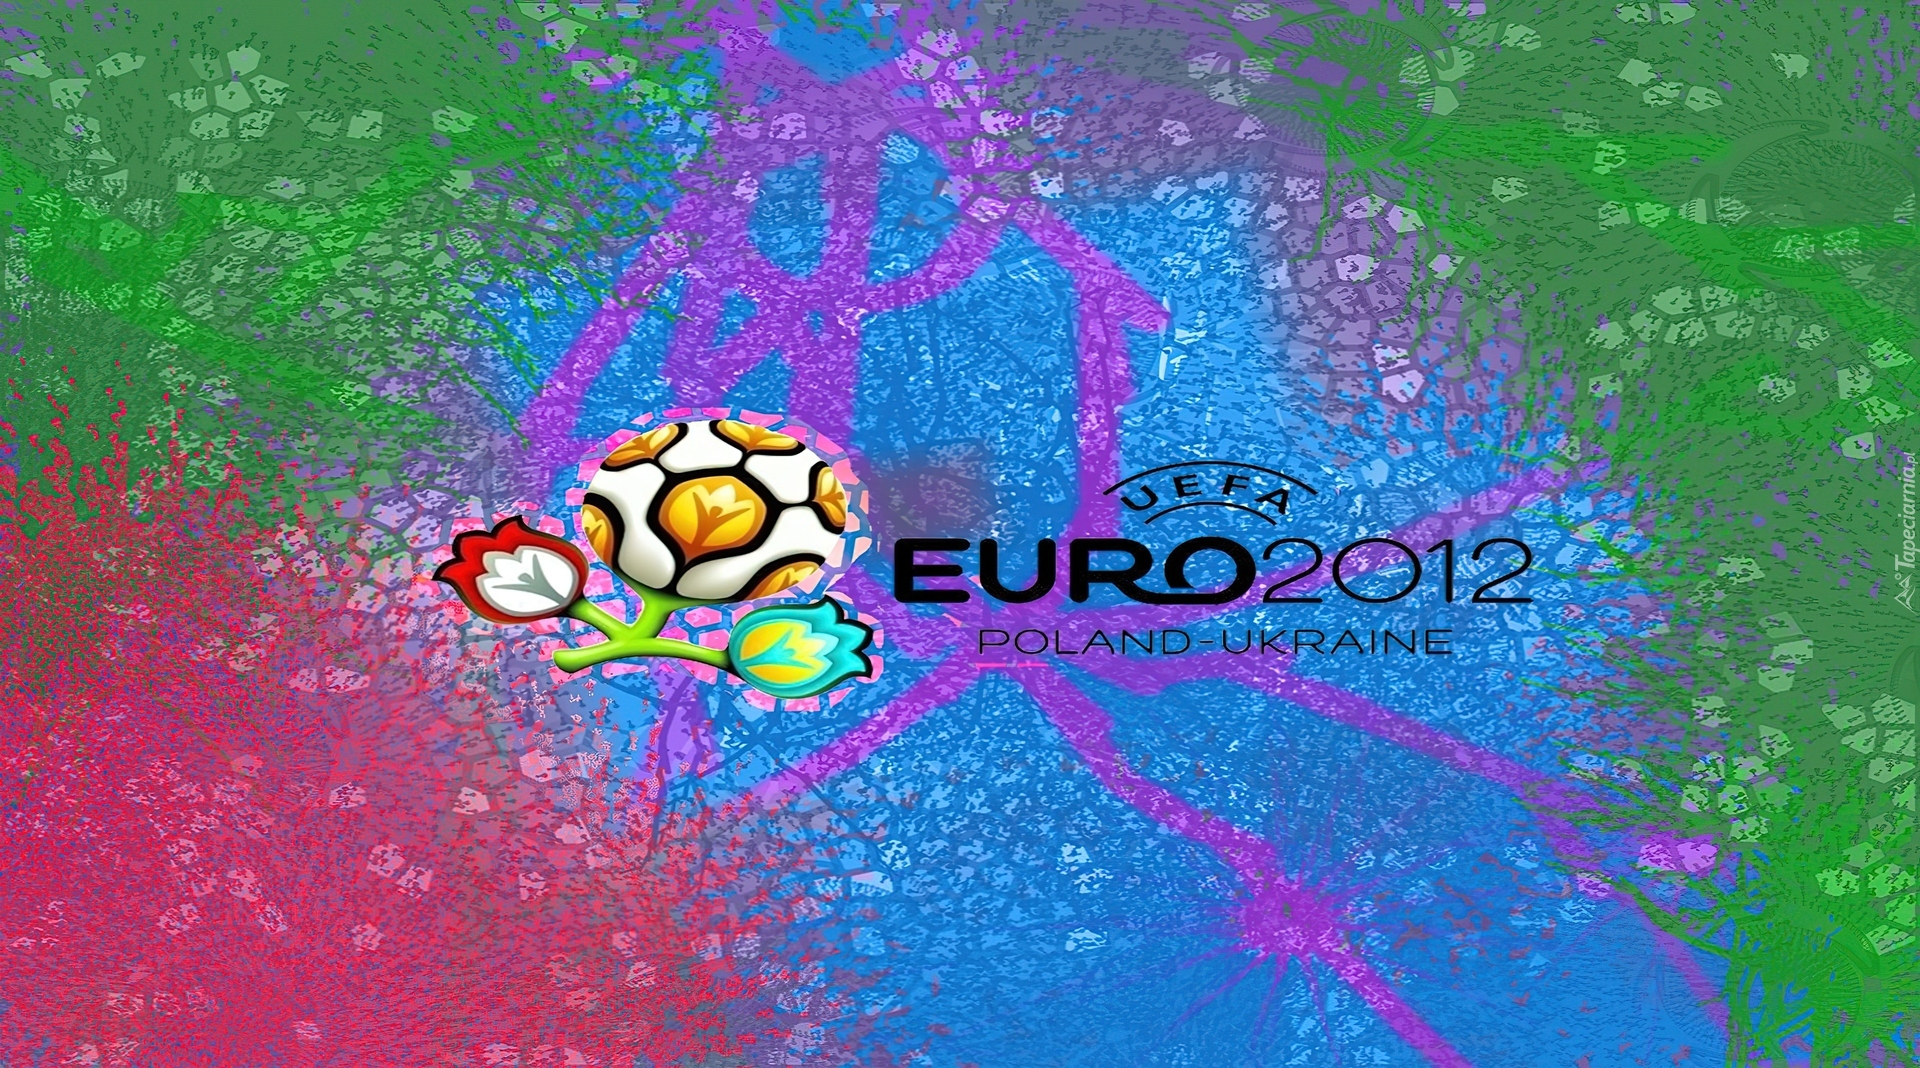 Euro, 2012, Logo